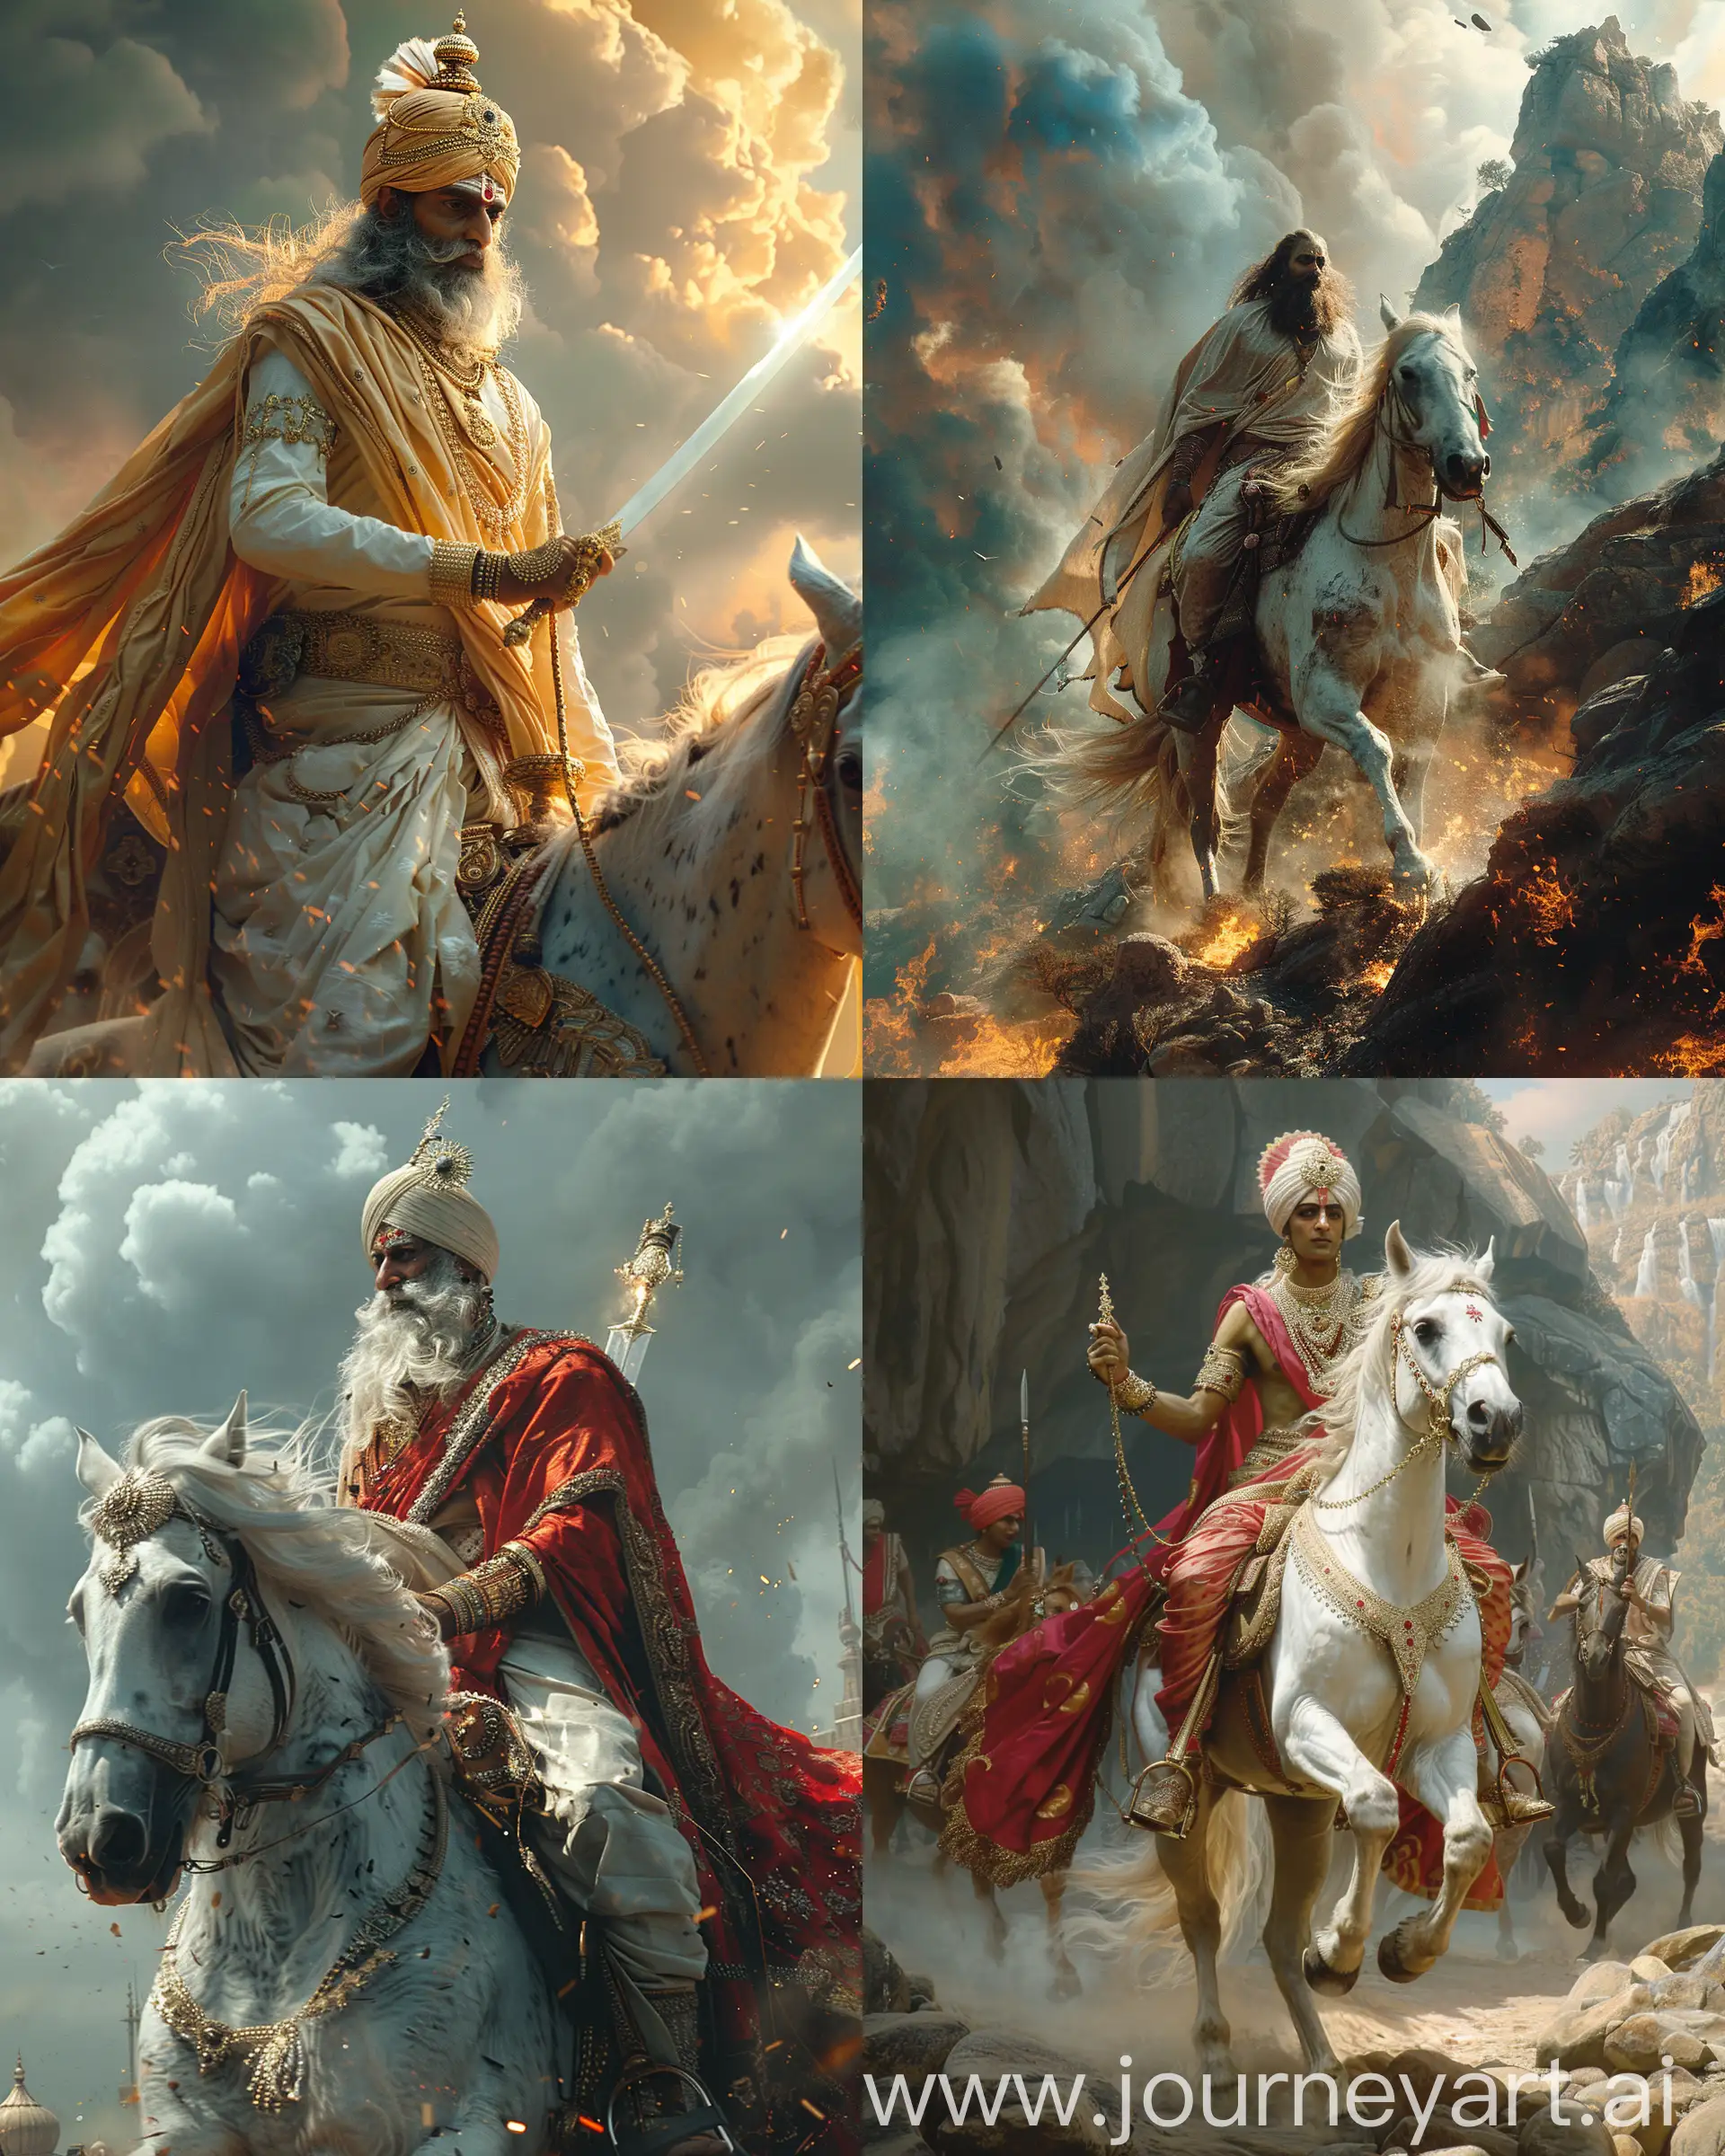 Majestic-Hindu-God-Kalki-Riding-White-Horse-with-Shining-Sword